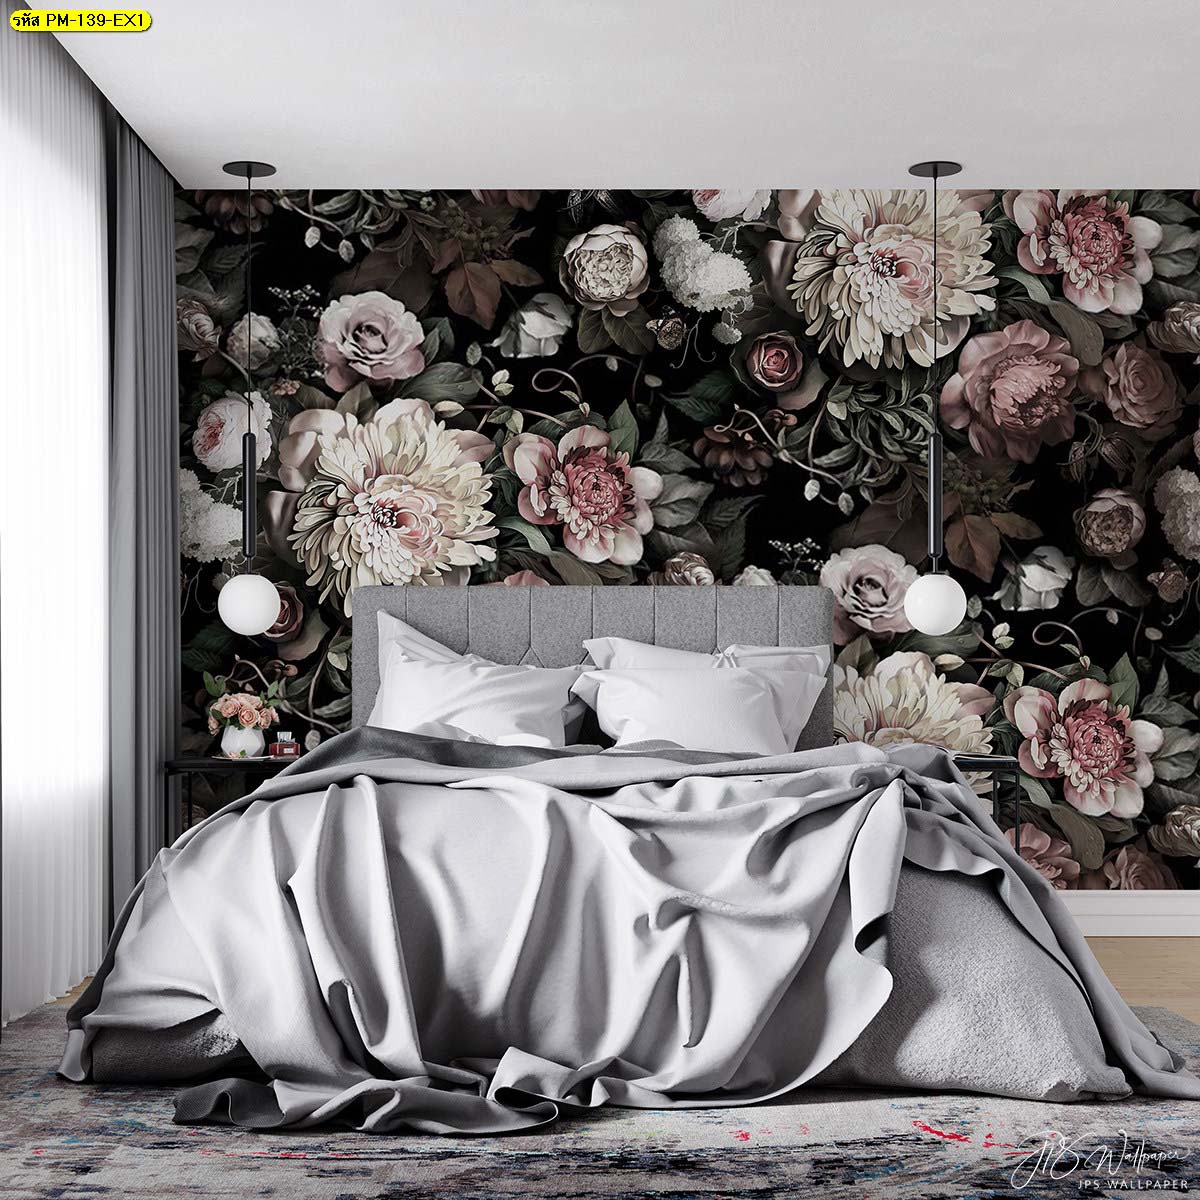 เตียงนอนผ้าปูสีเทาดีไซน์เรียบหรูพร้อมผนังลายดอกไม้หวานละมุนสไตล์วินเทจ